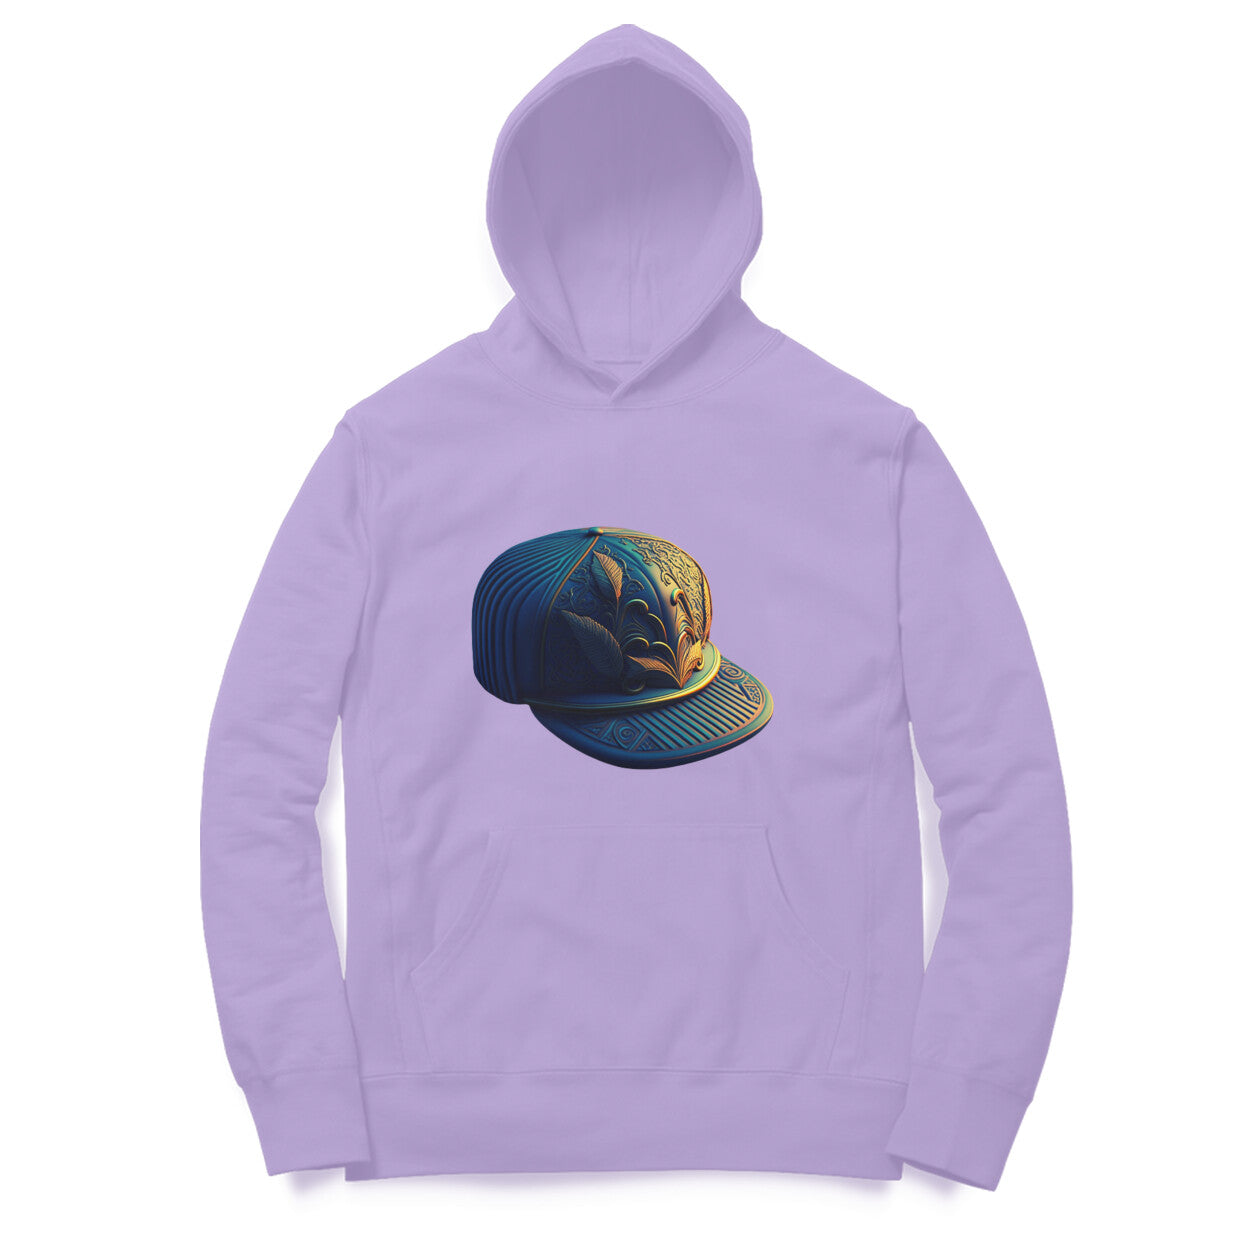 Designer Cap' hoodie